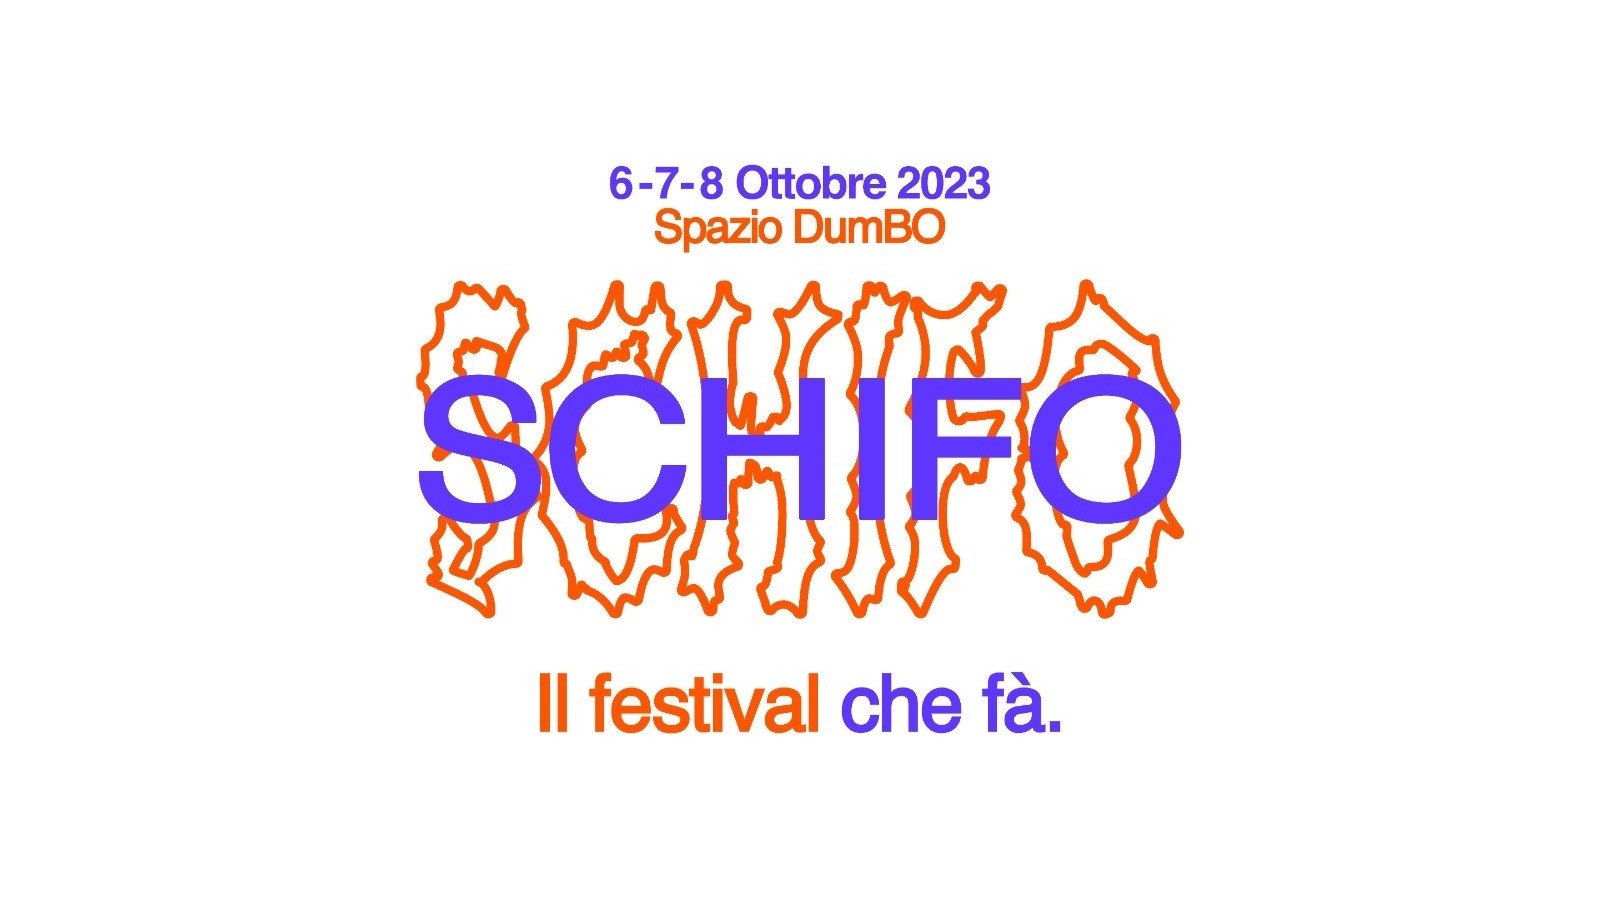 Schifo, Il Festival Che Fà.